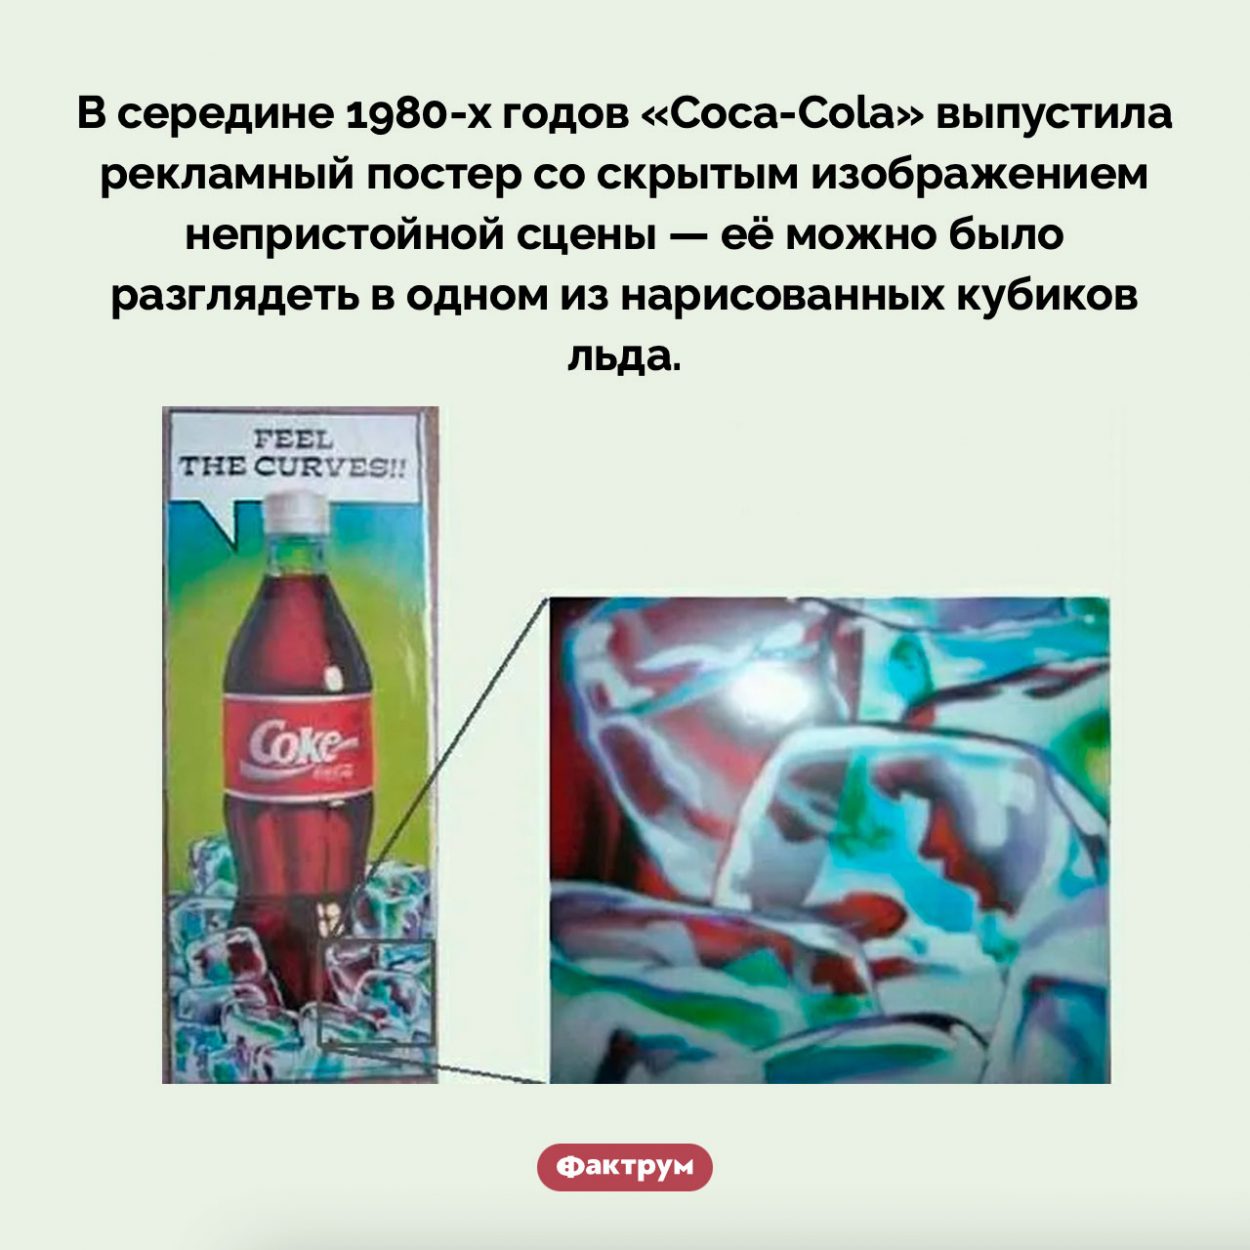 Непристойная реклама «Coca-Cola». В середине 1980-х годов «Coca-Cola» выпустила рекламный постер со скрытым изображением непристойной сцены — её можно было разглядеть в одном из нарисованных кубиков льда.